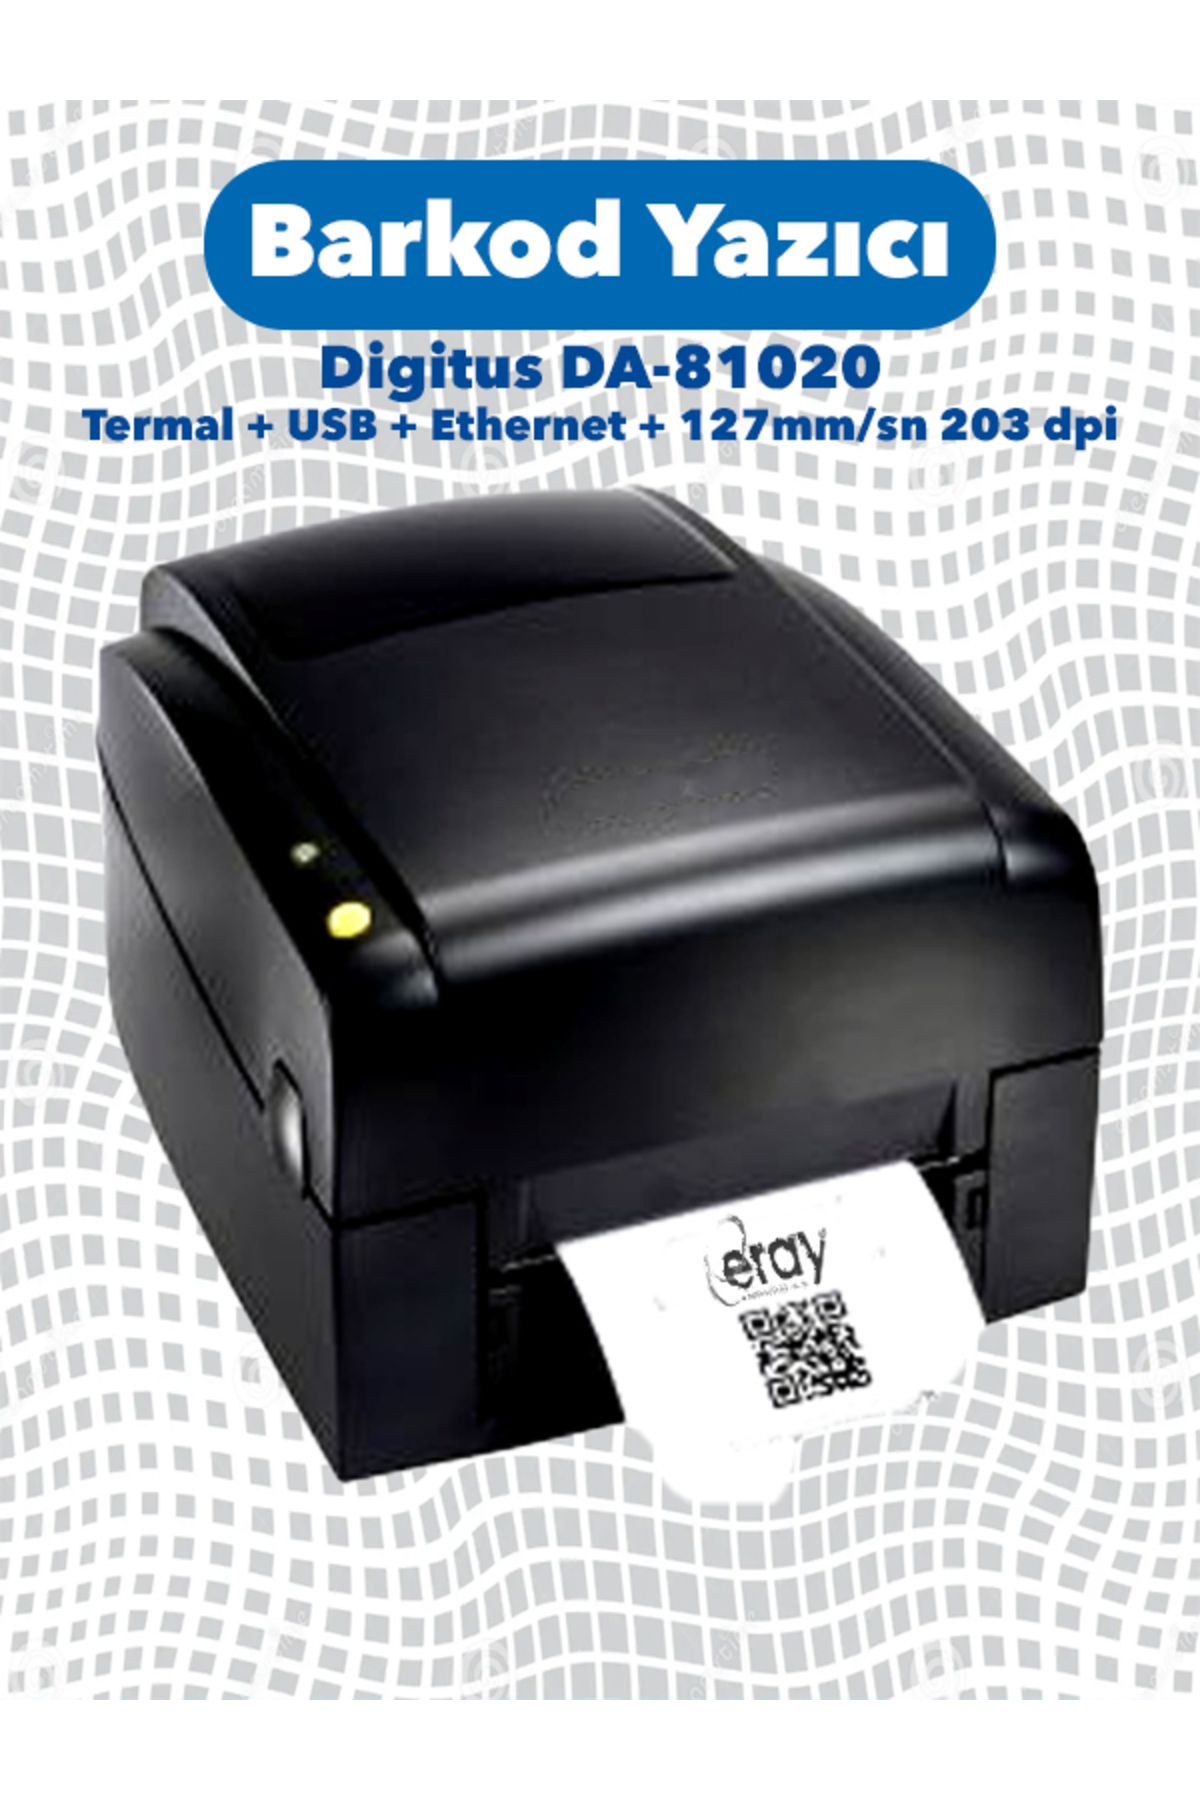 Digitus Da-81020 Barkod Ve Etiket Yazıcı (HIZLI ÇIKTI, UZUN ÖMÜRLÜ)